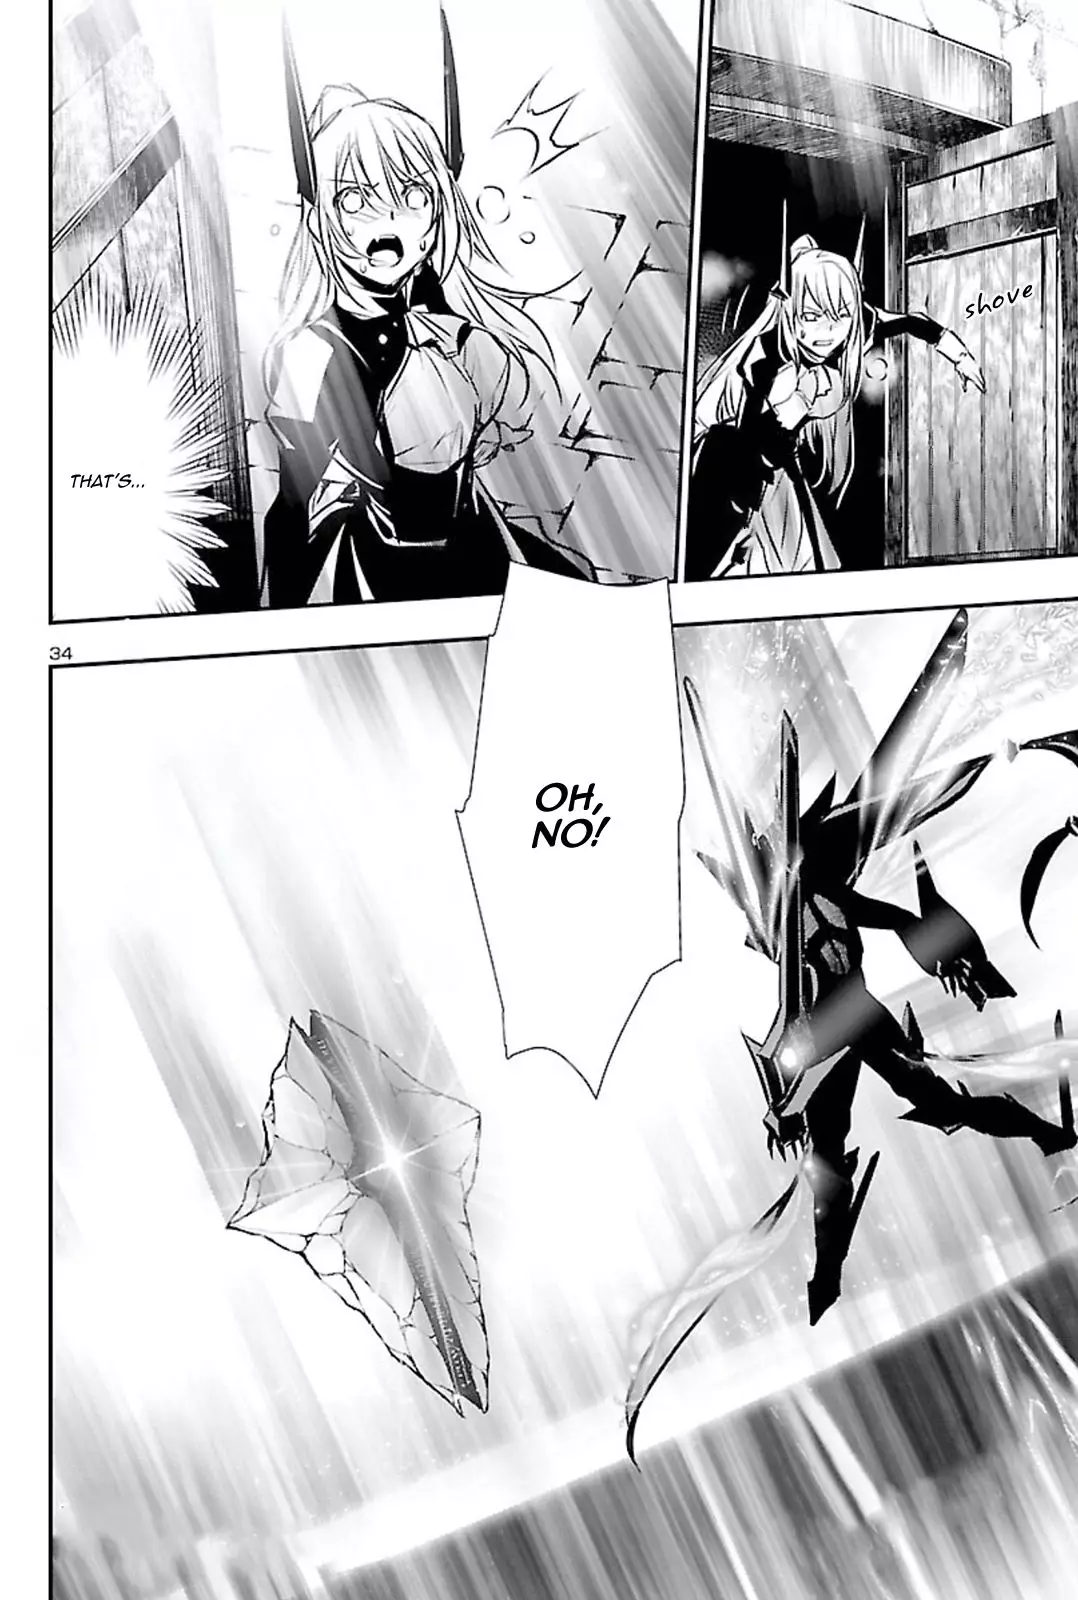 Shinju no Nectar - 46 page 34